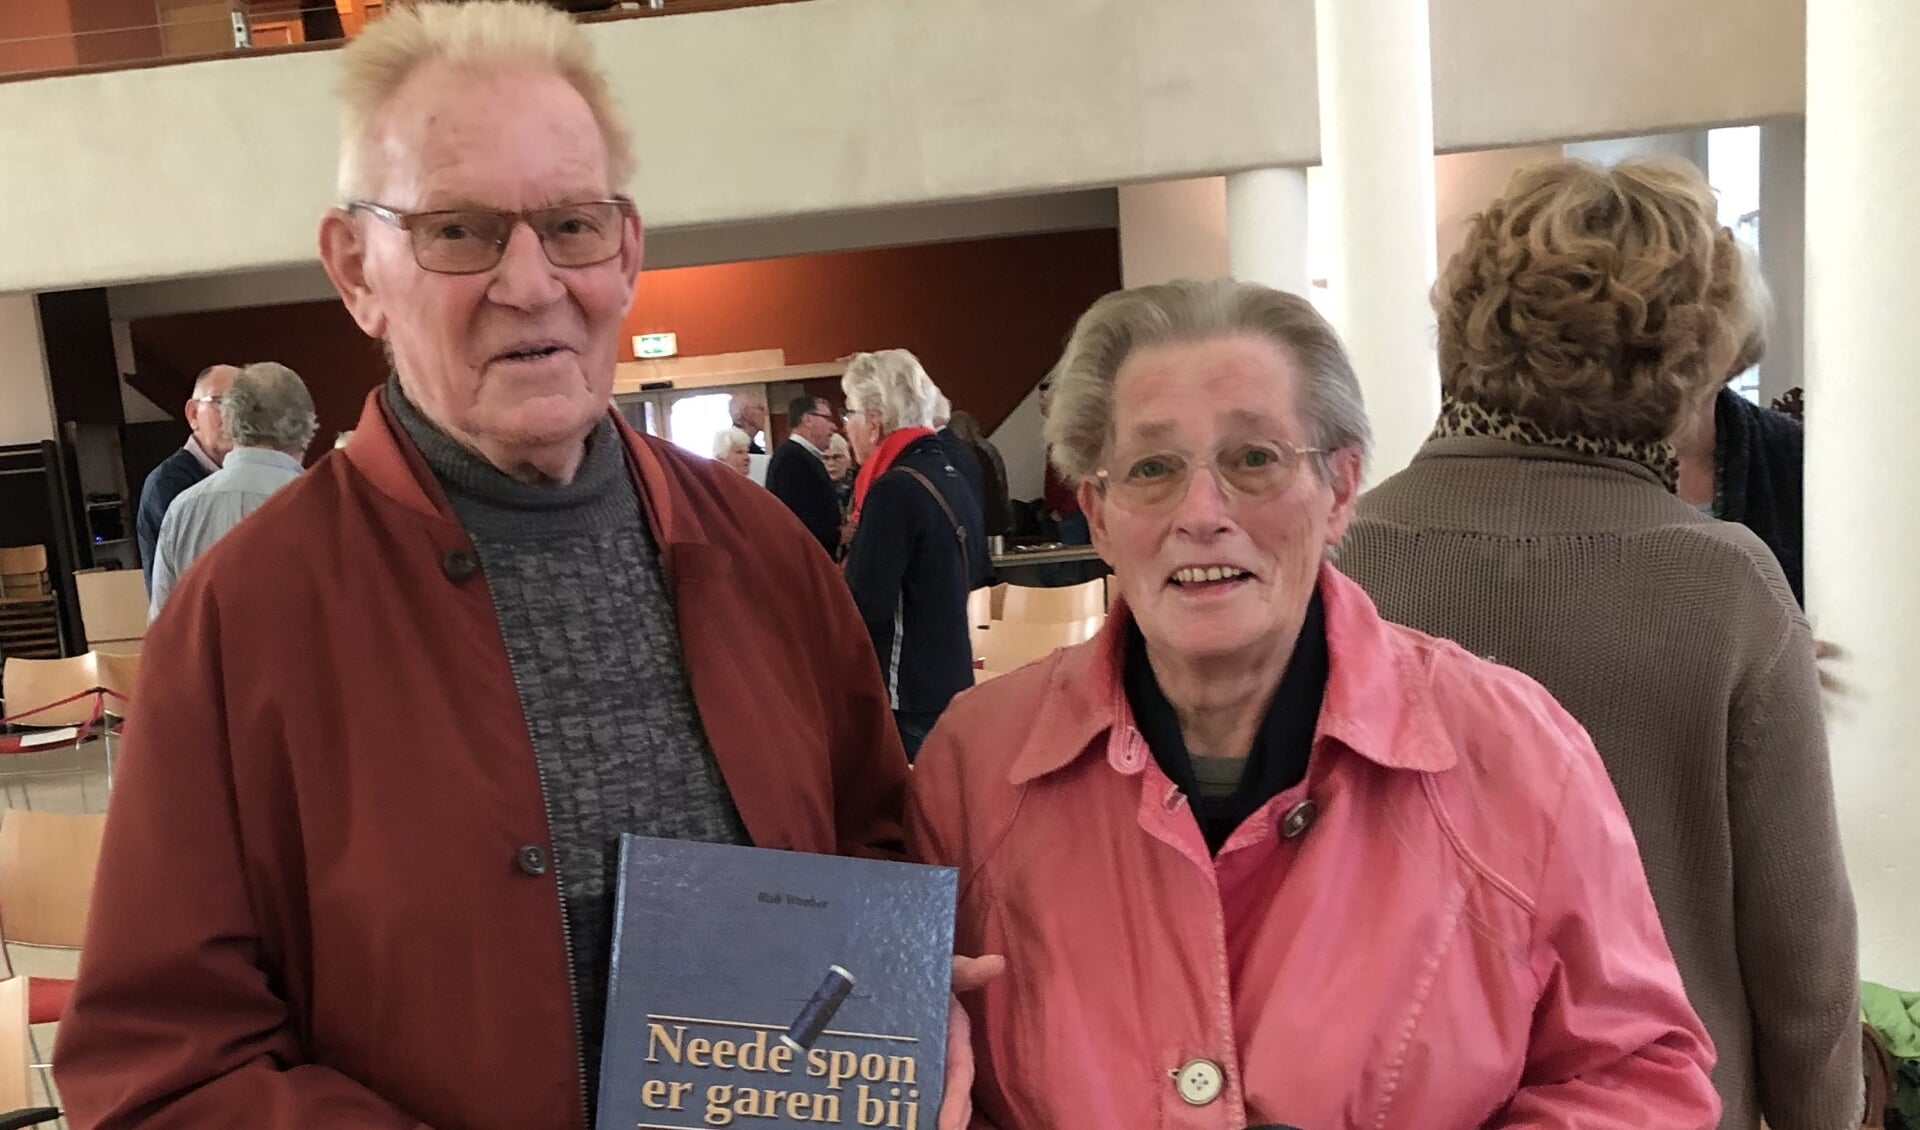 Geïnterviewde Gerrit Heijdemann, voormalig getouwhersteller bij Ter Weeme, toont samen met zijn echtgenote het boek ‘Neede spon er garen bij’. Foto: Bert Izaks